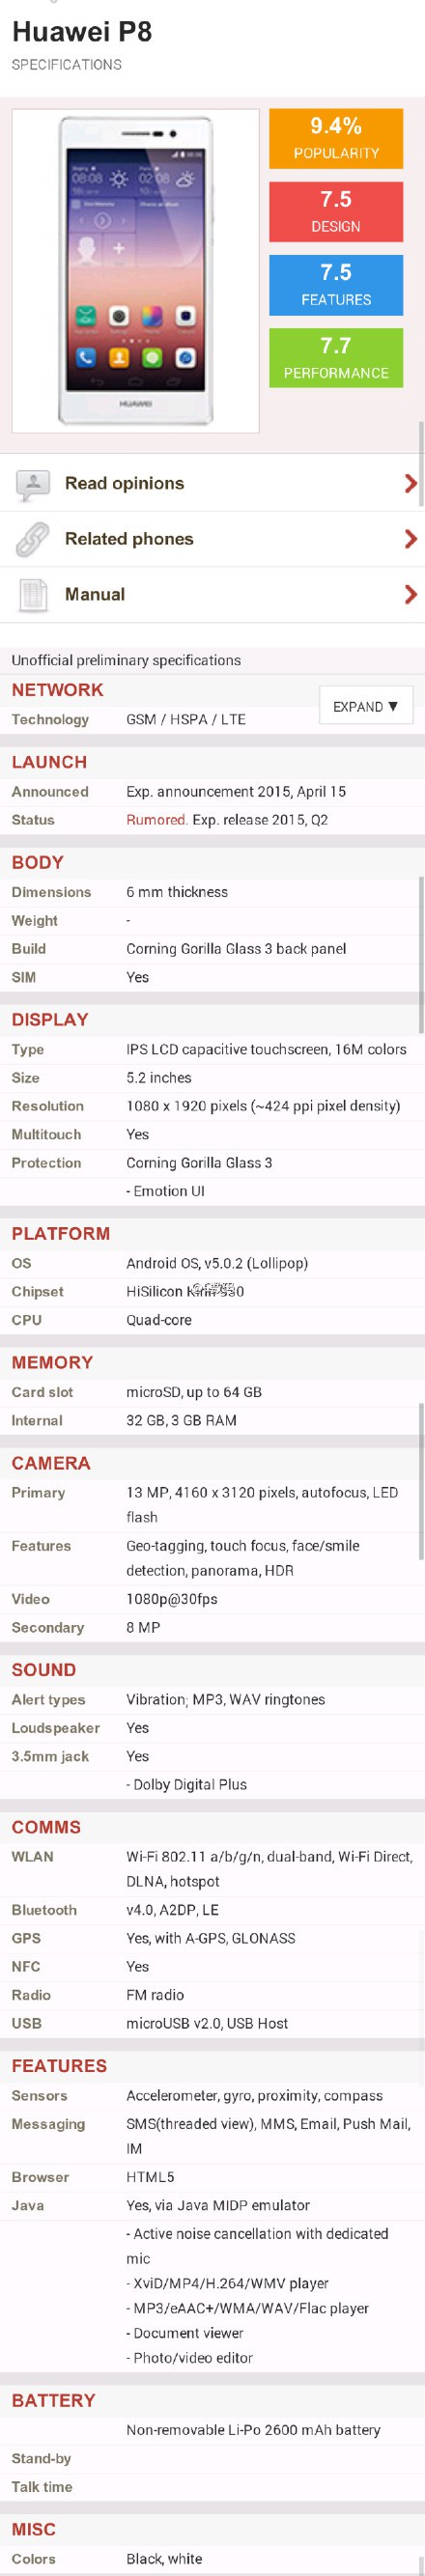 Huawei P8 especificaciones